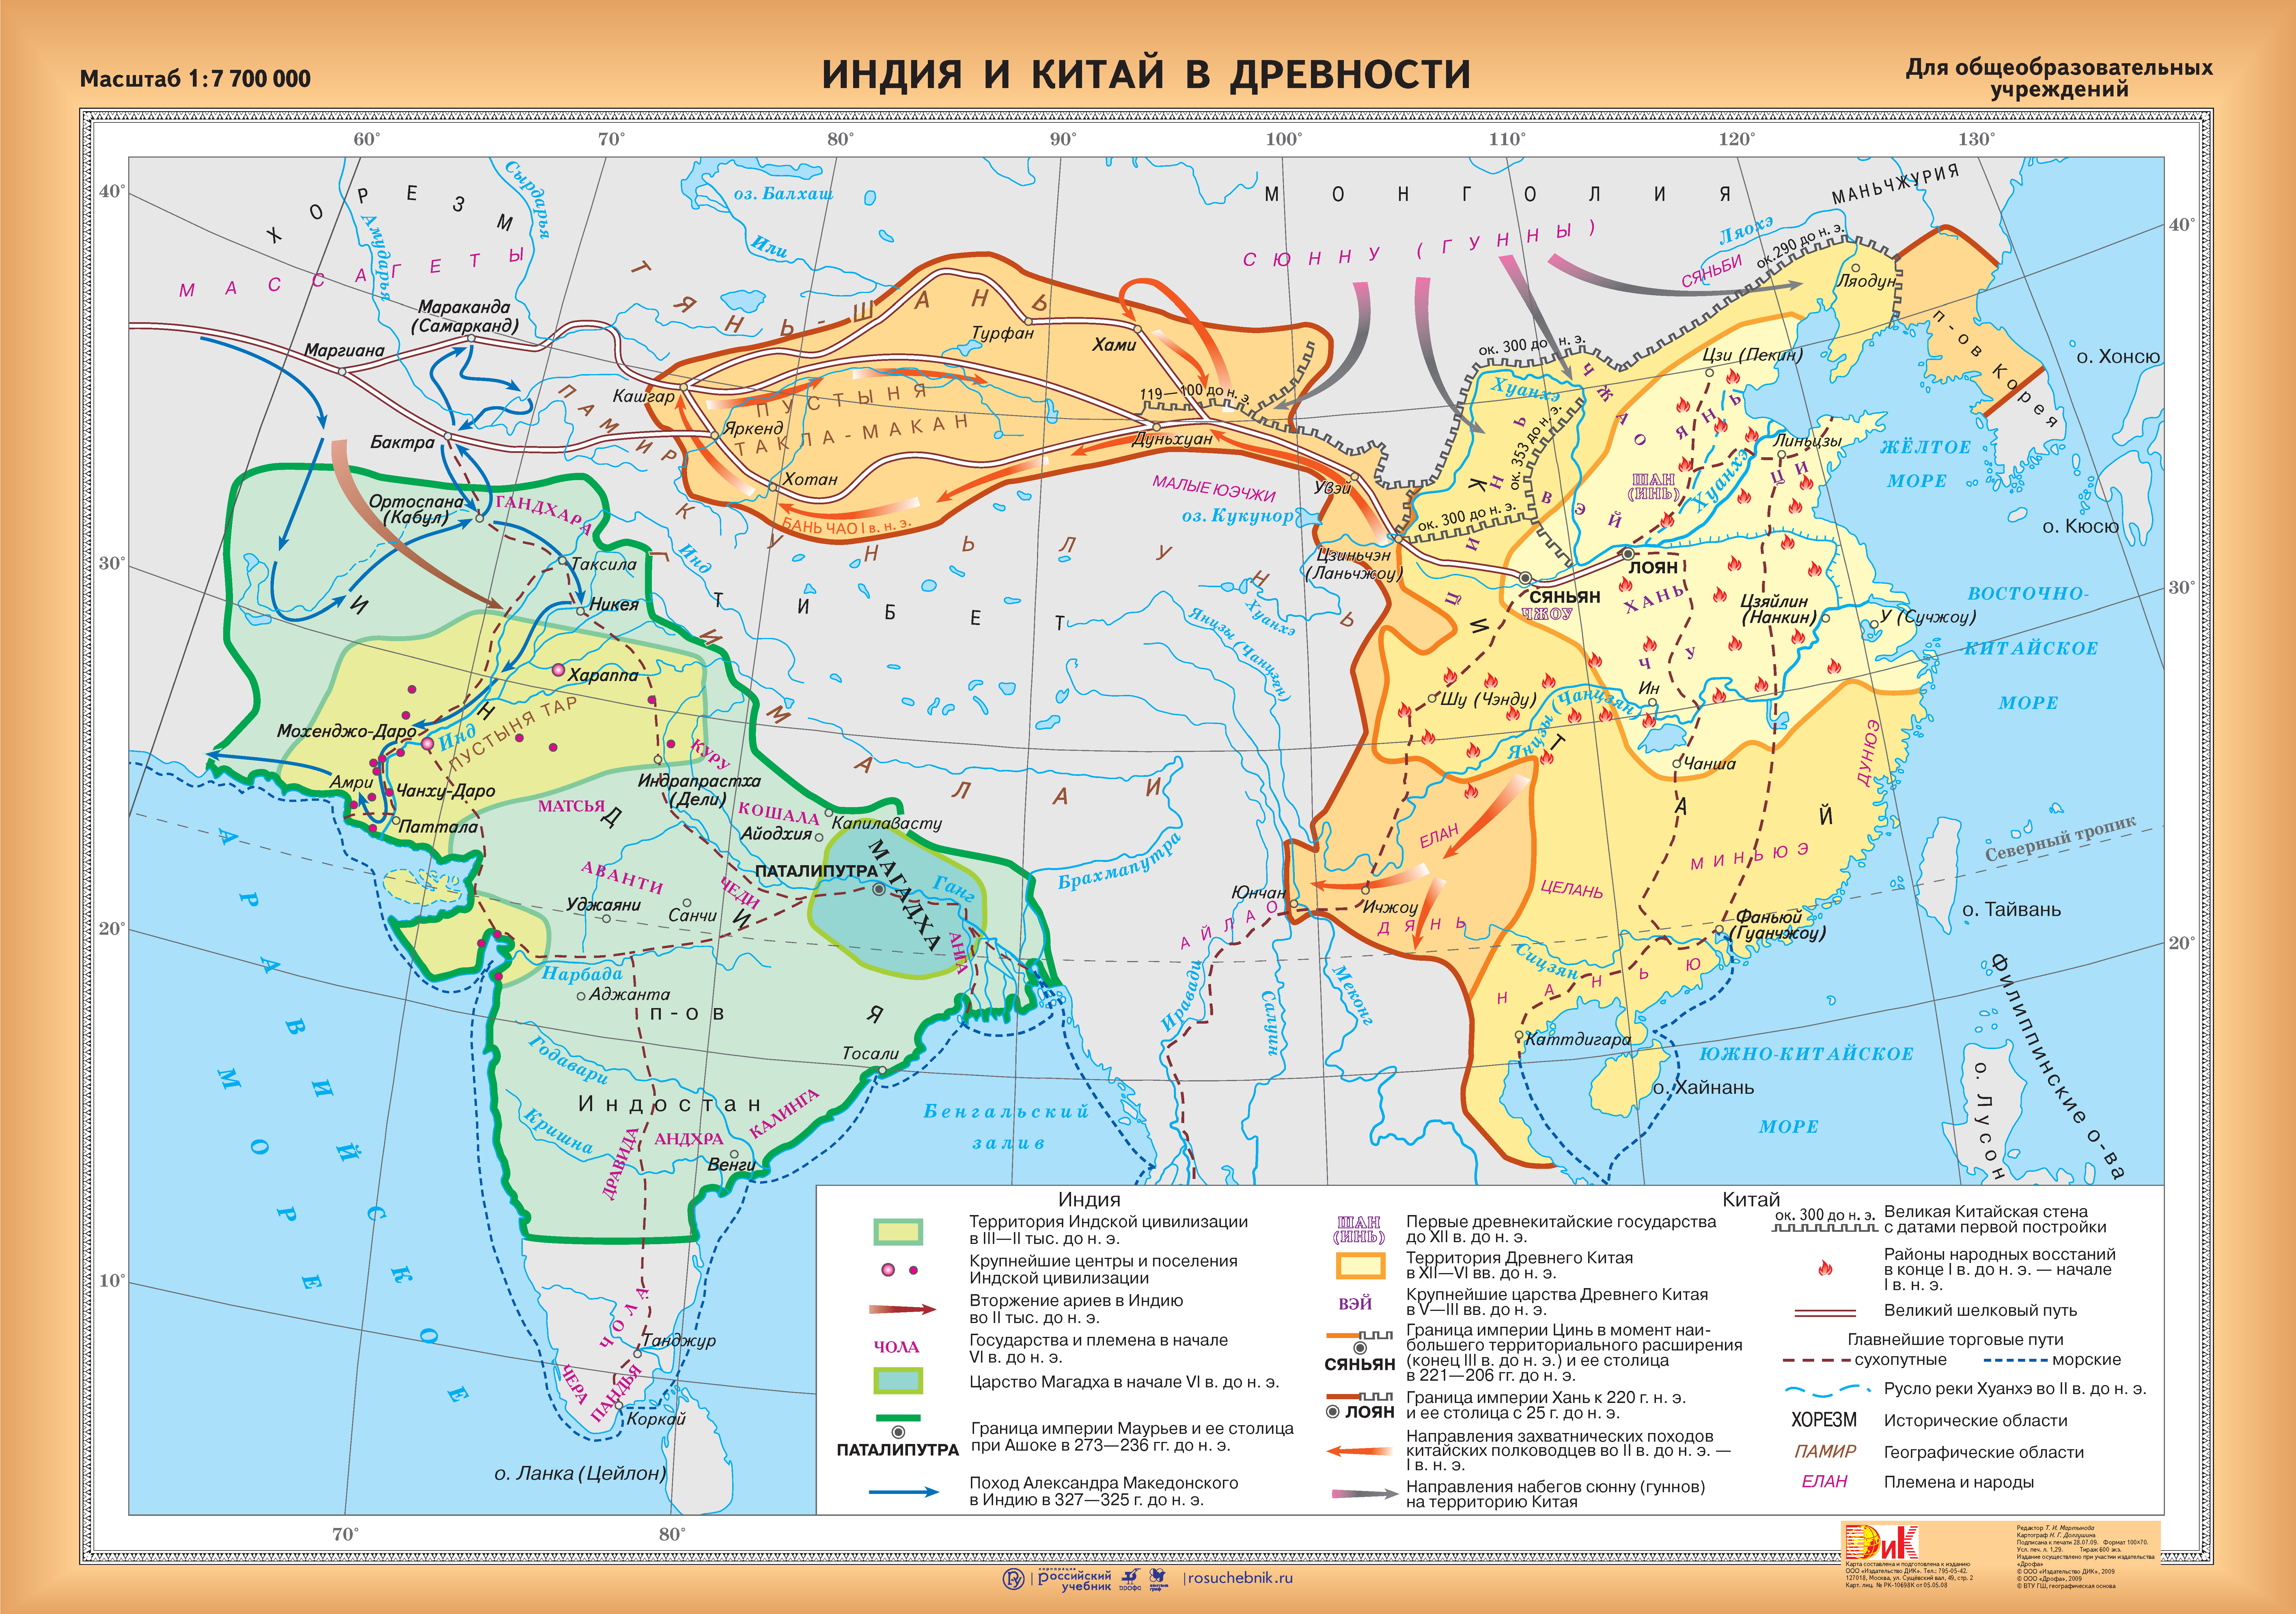 Где находился древний китай история 5 класс. Карта древняя Индия и Китай 5 класс. Индия и Китай в древности карта. Карта Индии и Китая в древности 5 класс по истории.